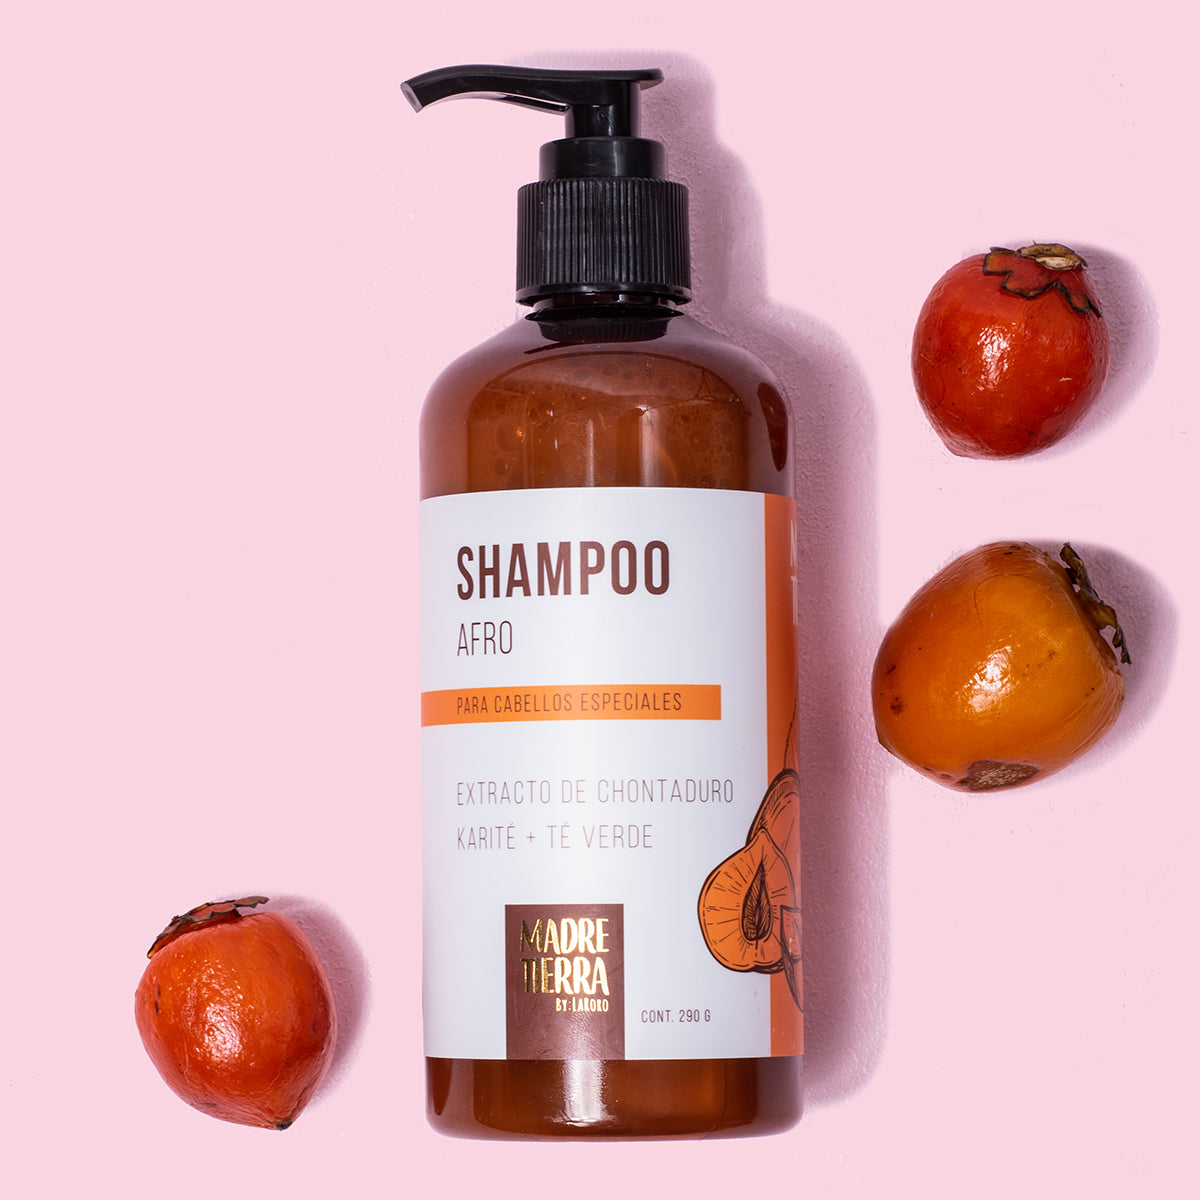 Shampoo Afro para cabellos especiales - Madre Tierra Oficial